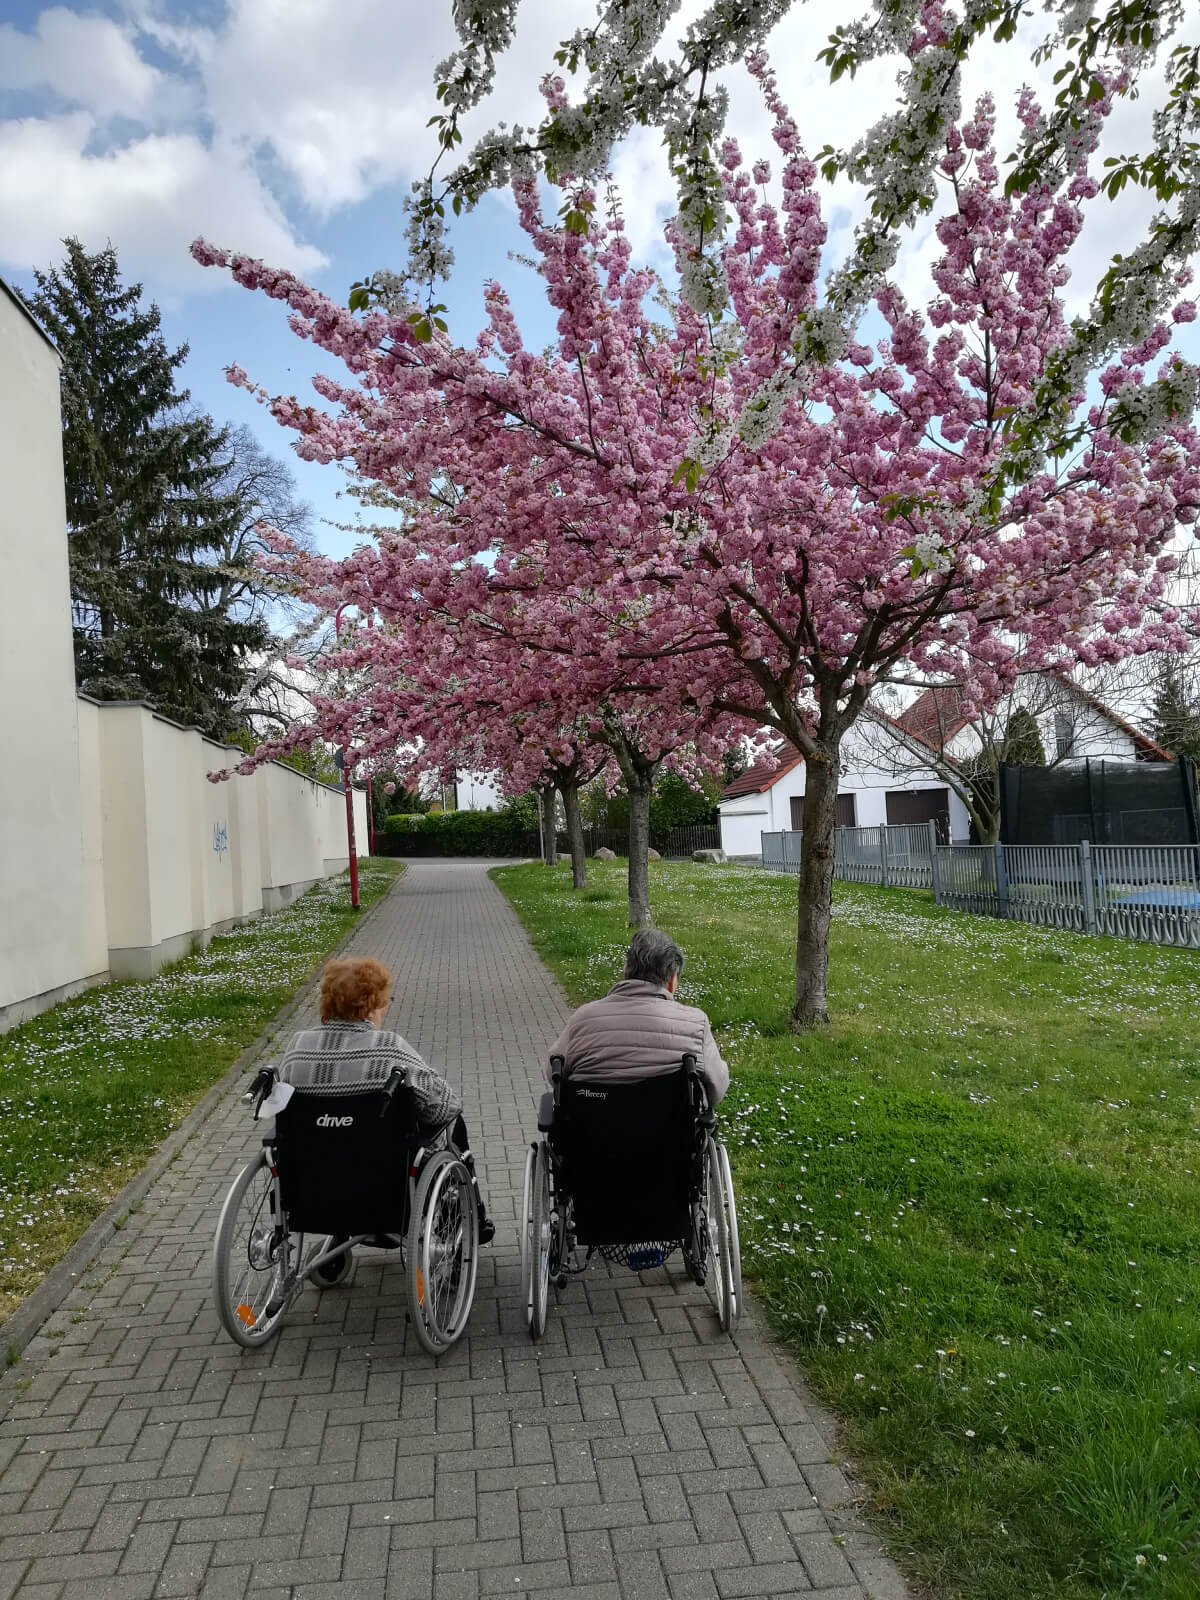 Senioren im Rollstuhl genießen den Frühling beim Spazieren unter blühenden Bäumen